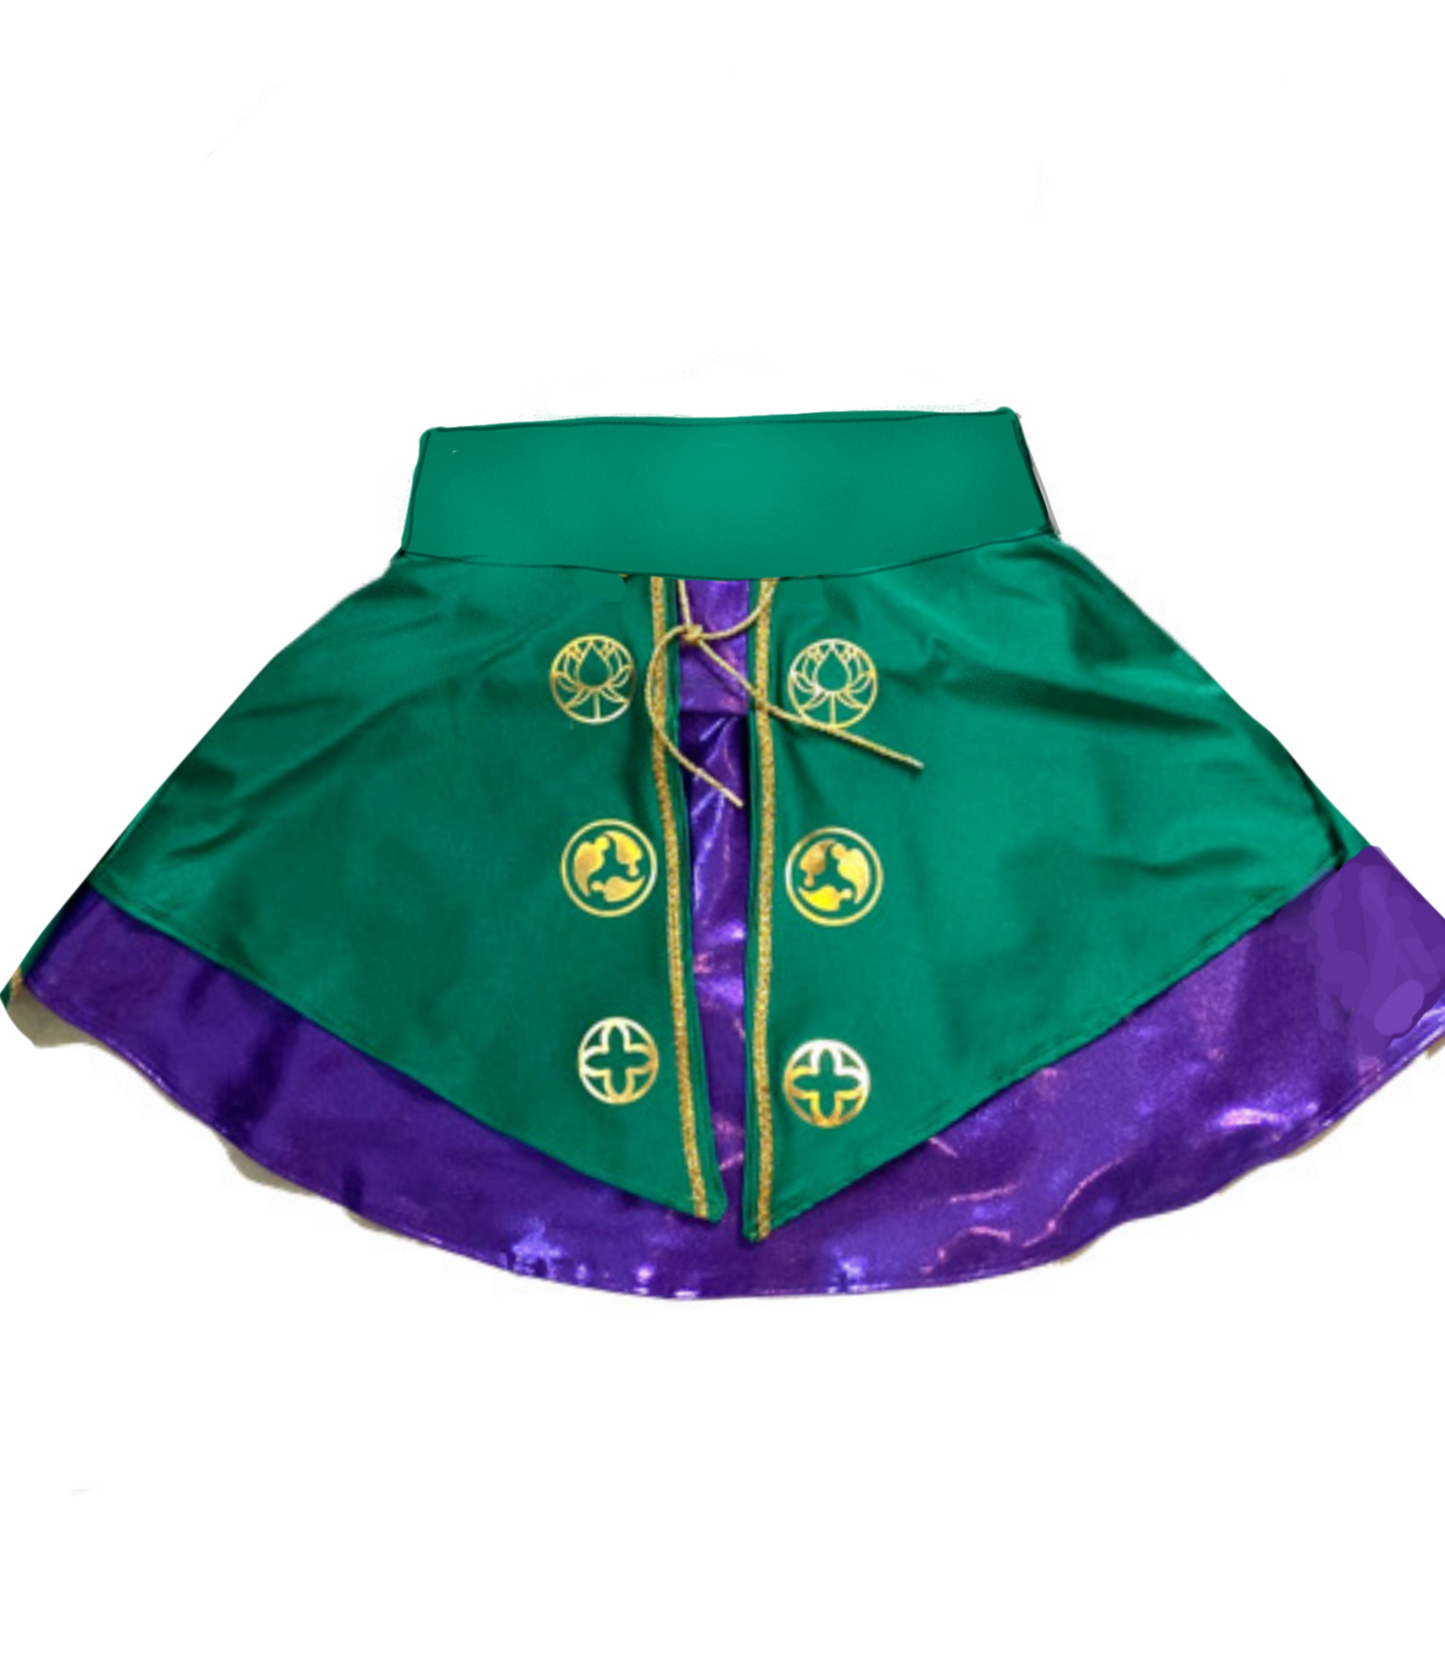 Custom skirt for R. Quinlan